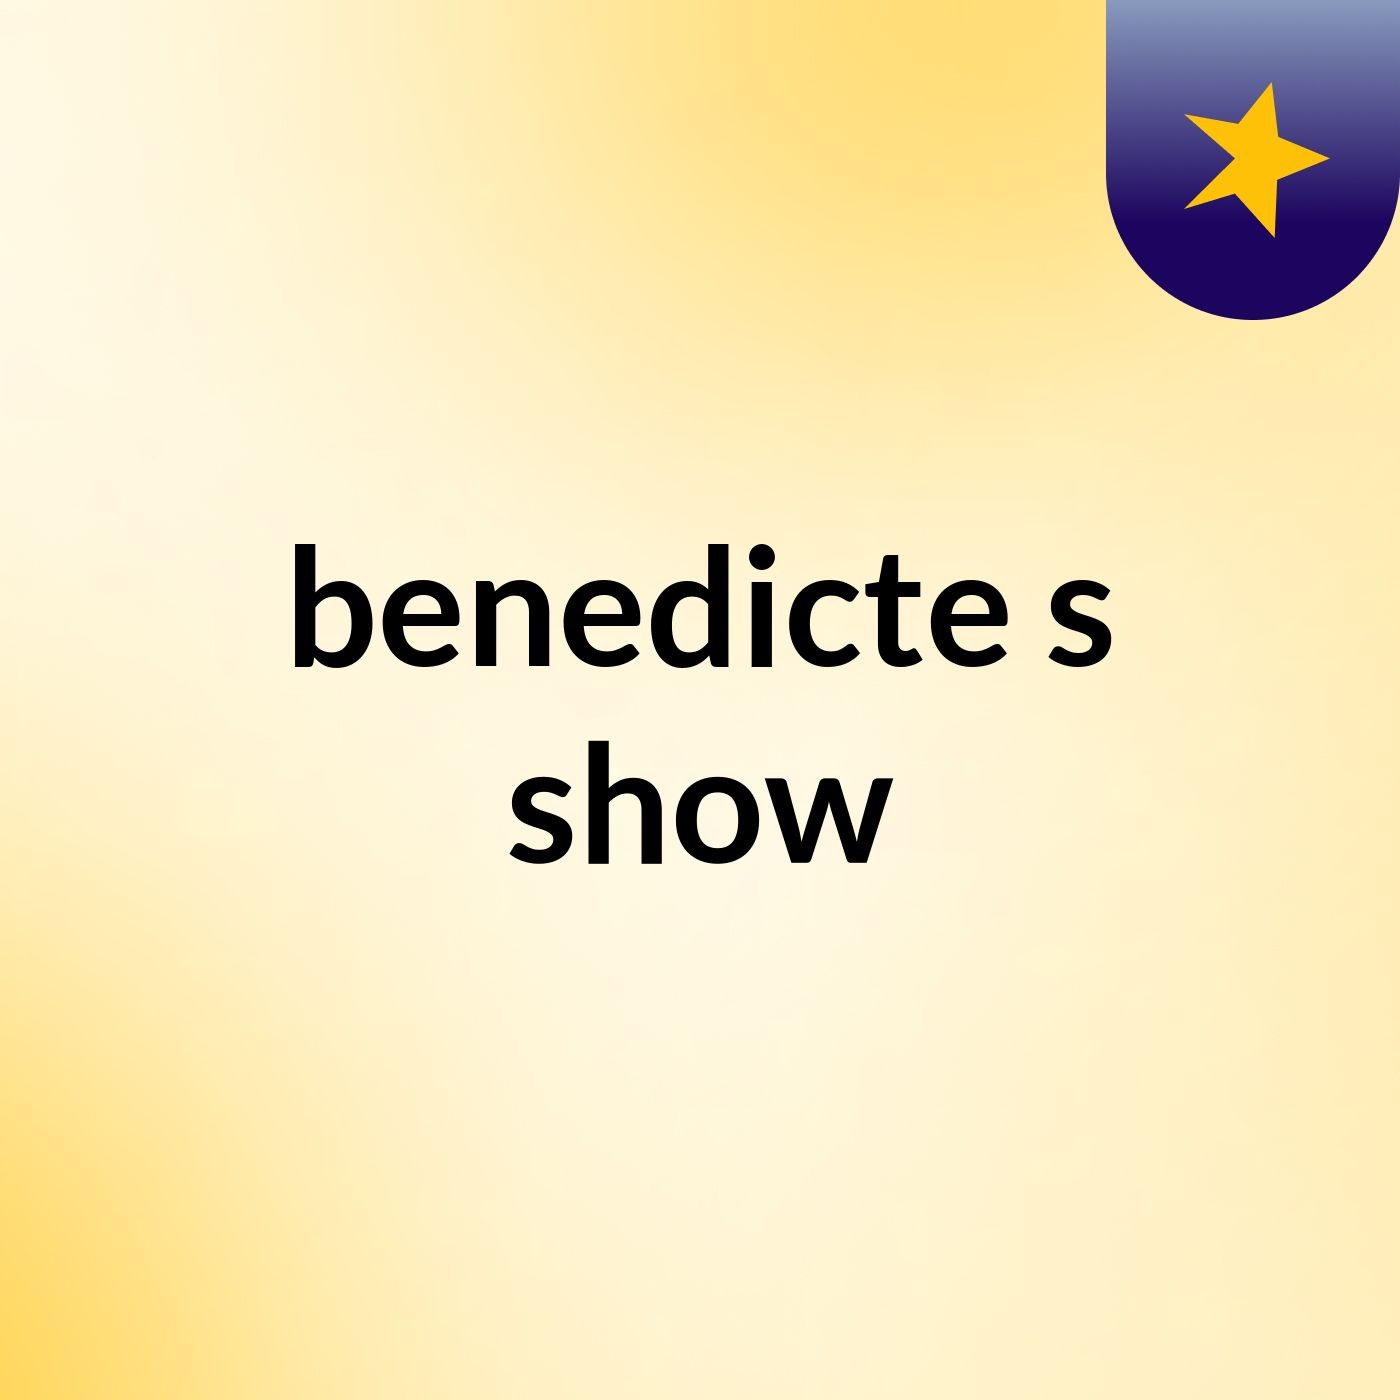 benedicte's show